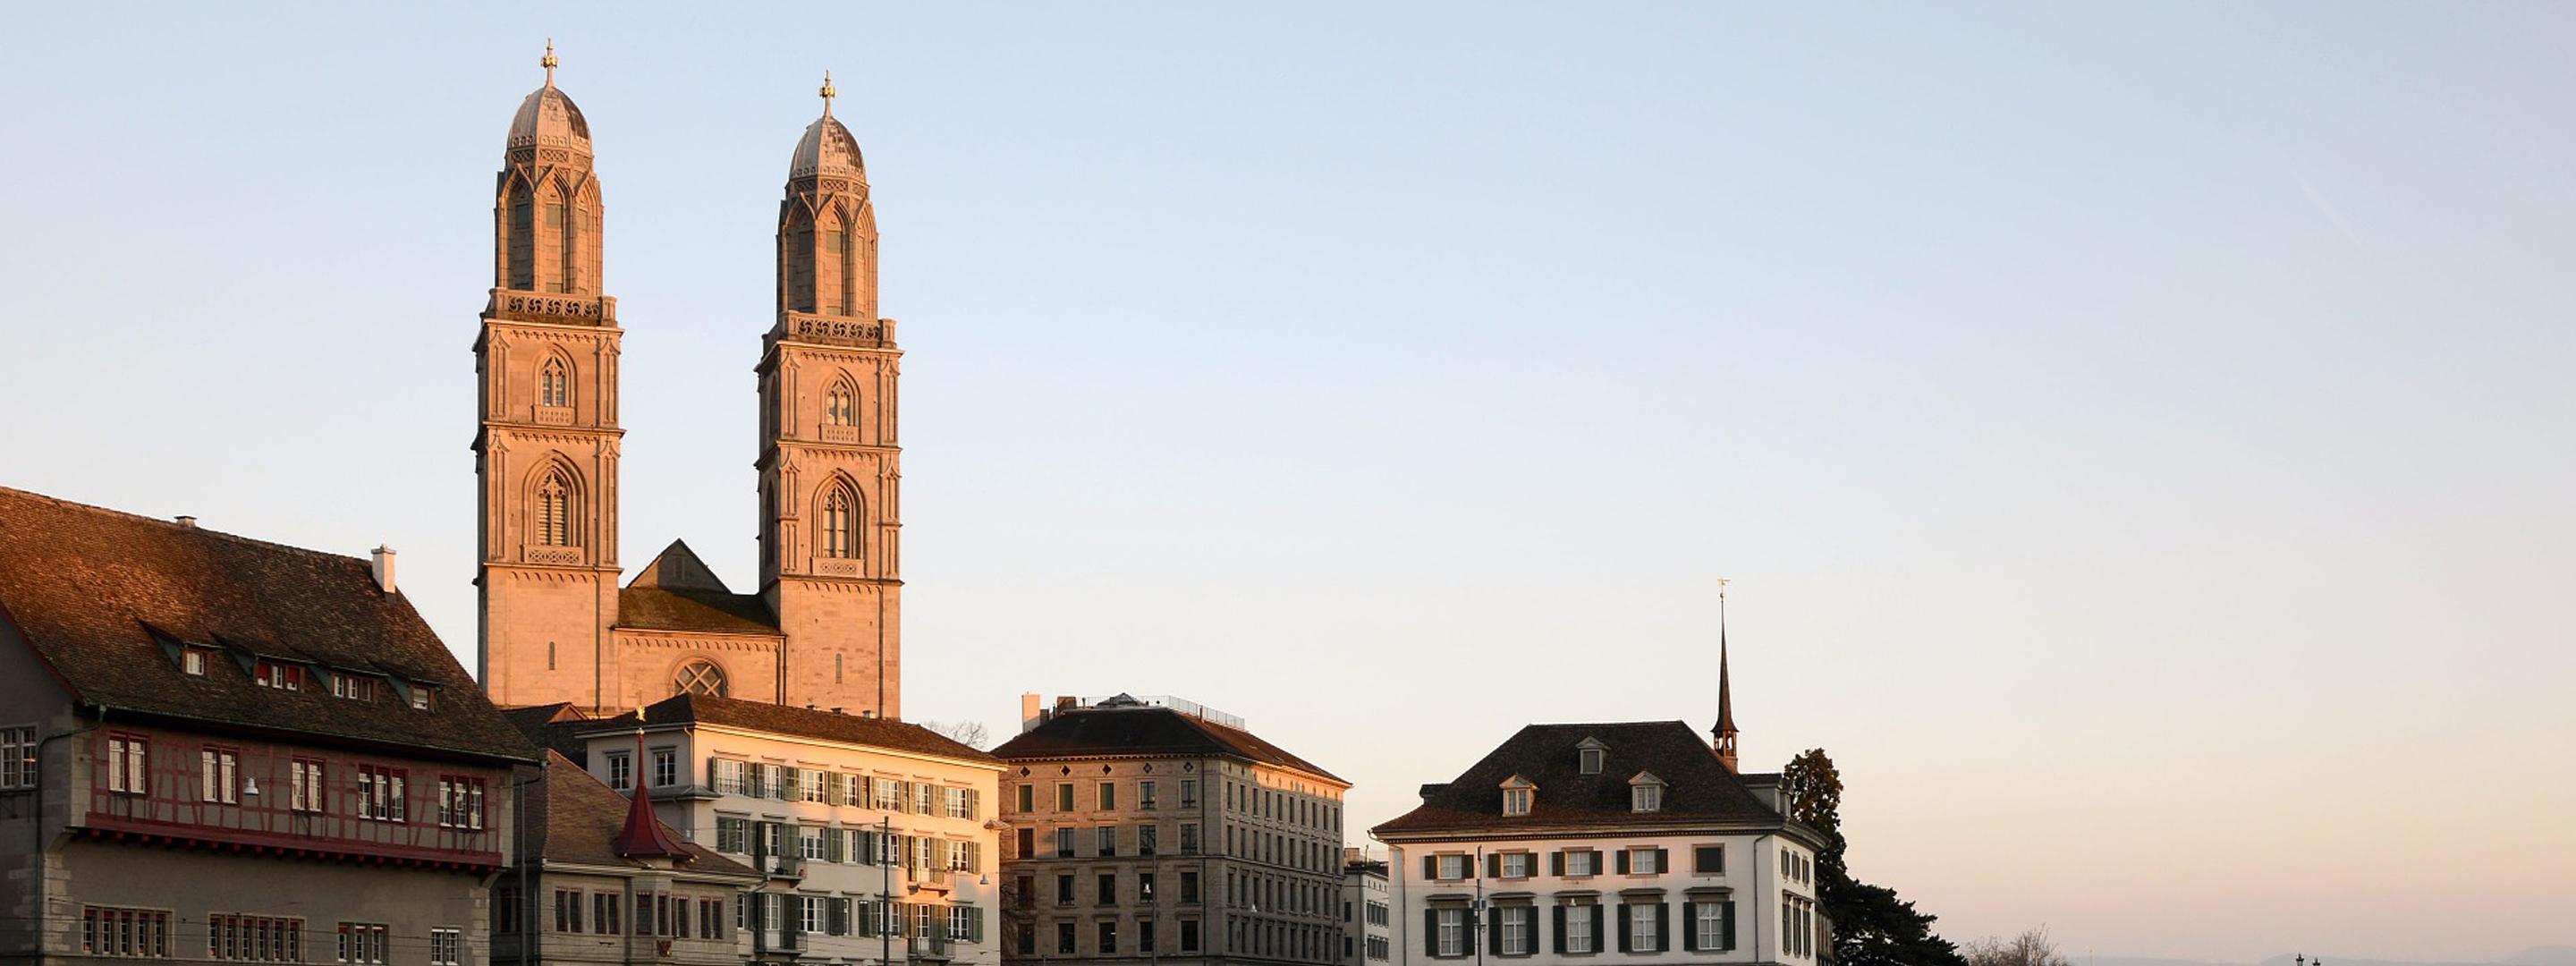 Zürich als Standort mehrerer Roundshot-Webcams